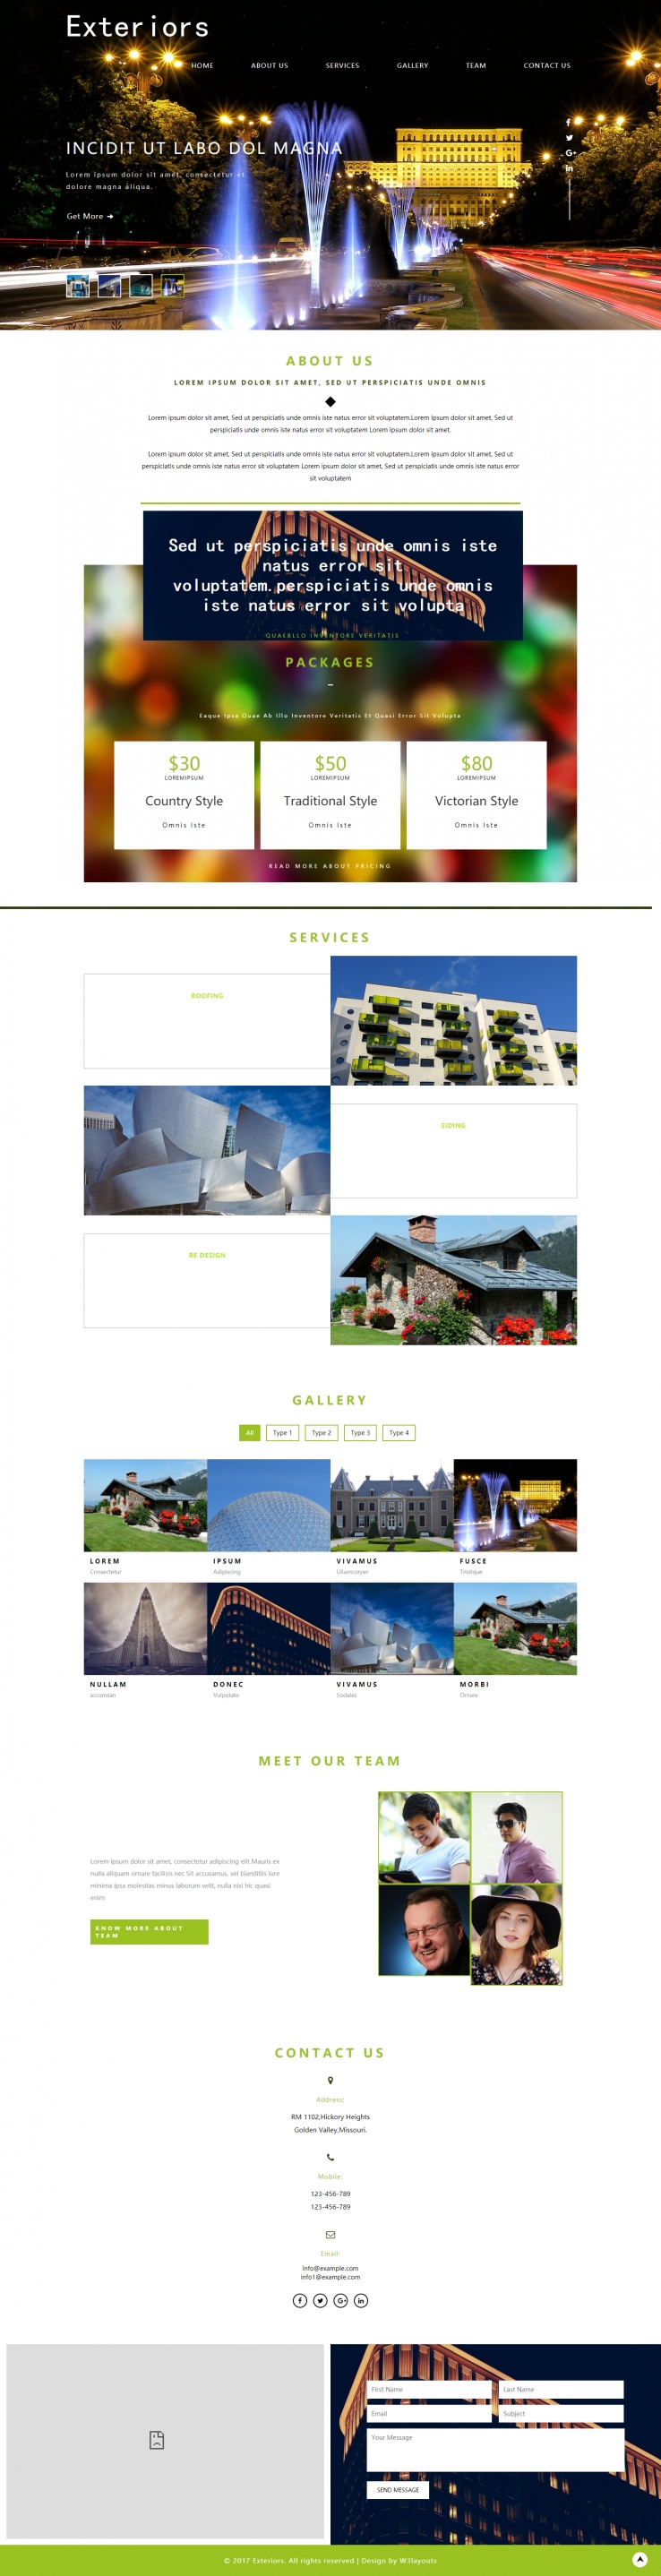 白色欧美风格的建筑外观维修企业网站源码下载